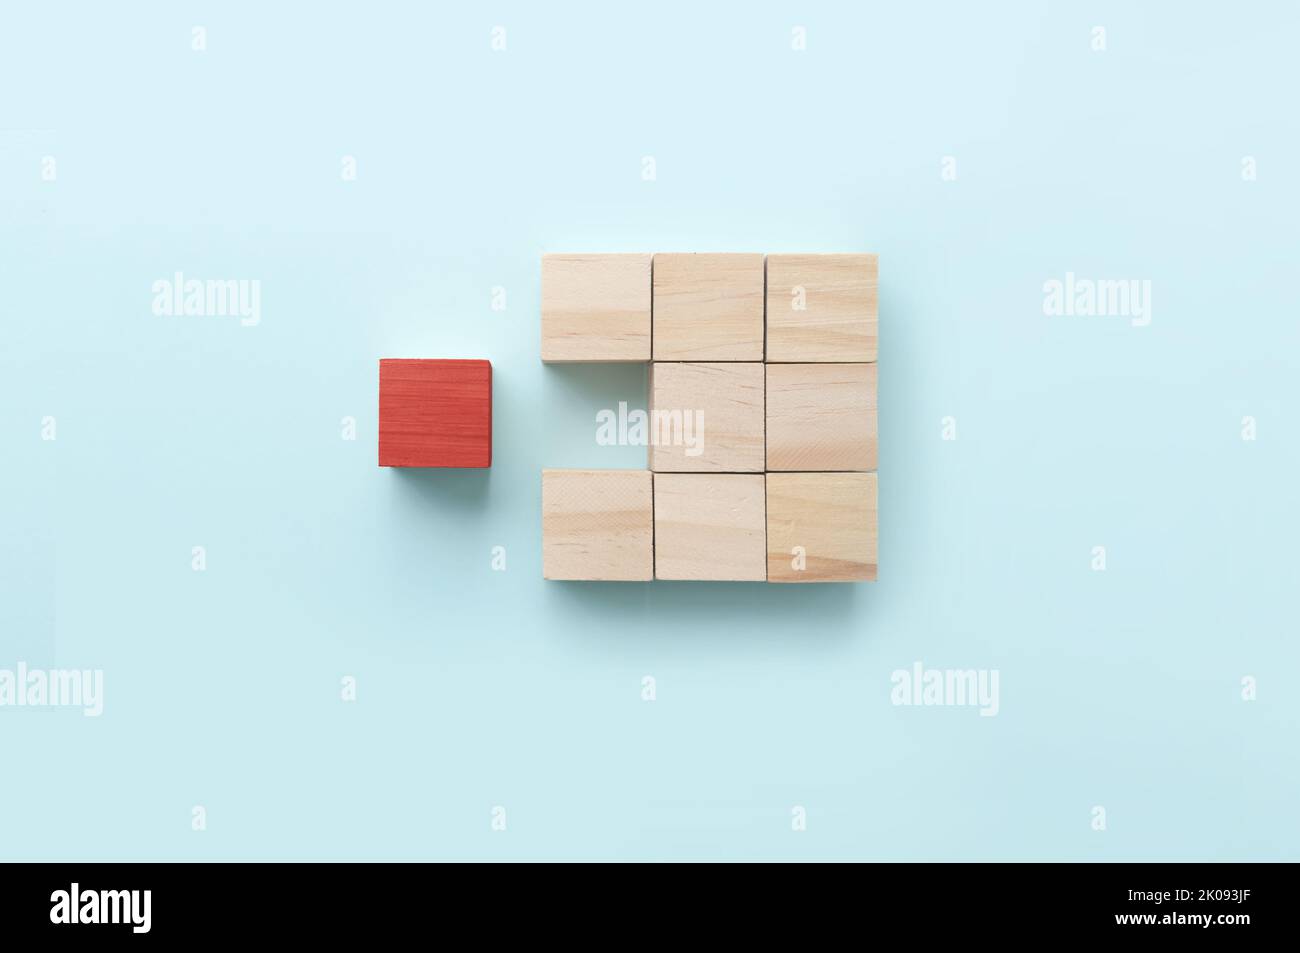 Bloque de madera rojo que destaca entre otras piezas del concepto de negocio Foto de stock